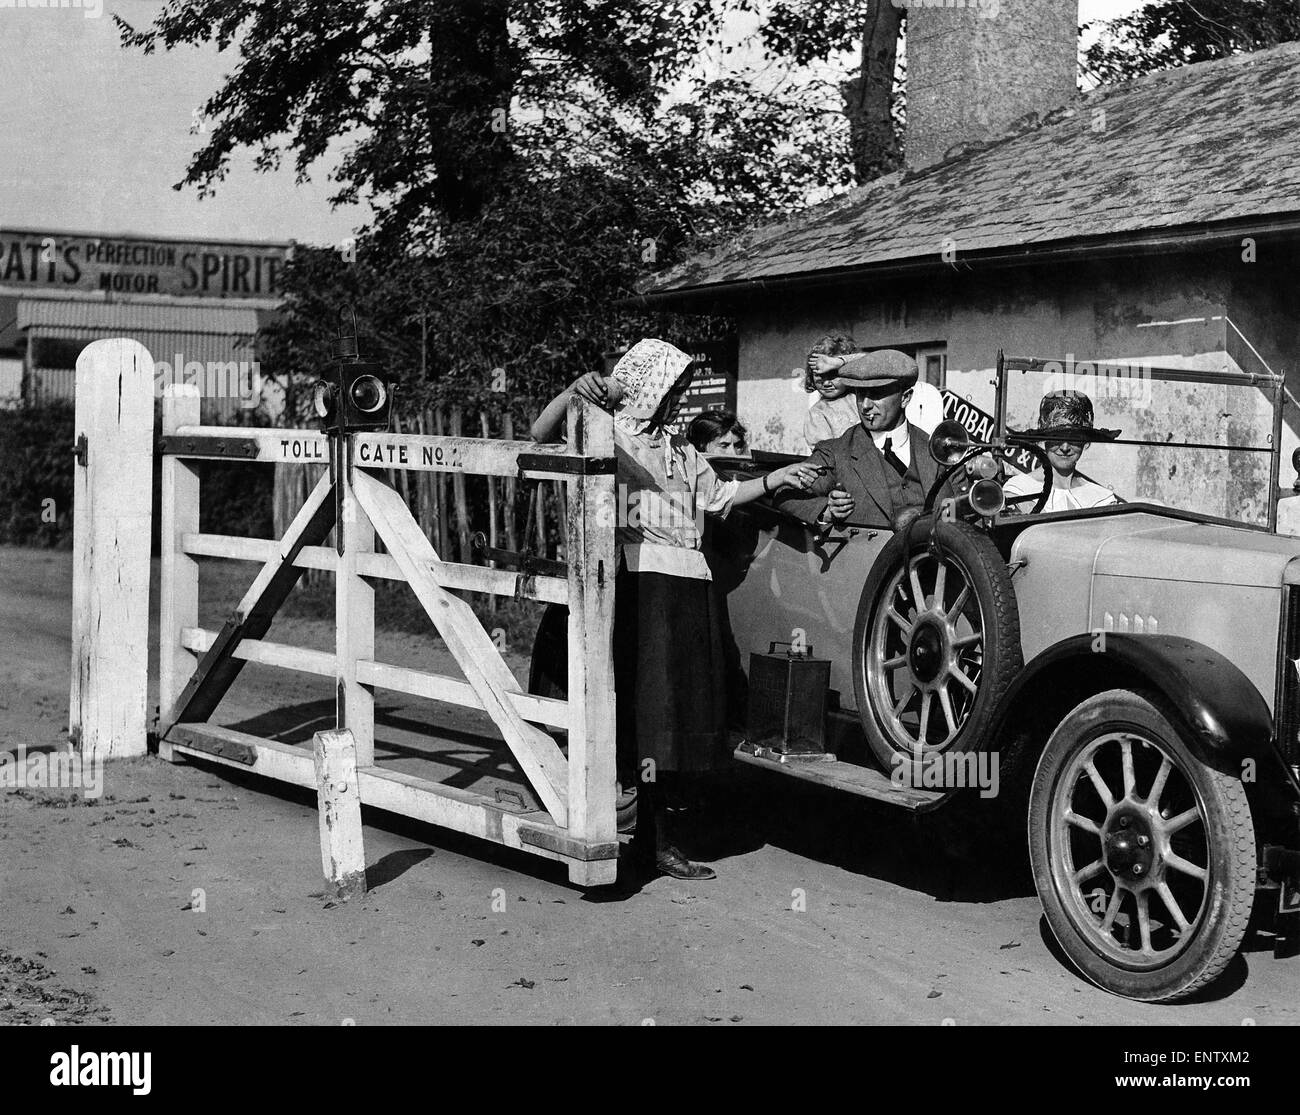 Roggen berühmte Maut abgeschafft. Tausende von Autofahrern in Sussex, die malerischen Mautstraße bekannt ist der historischen Verbindungspunkte von Roggen und Winchelsea, abgeschafft worden. 29. August 1927 Stockfoto